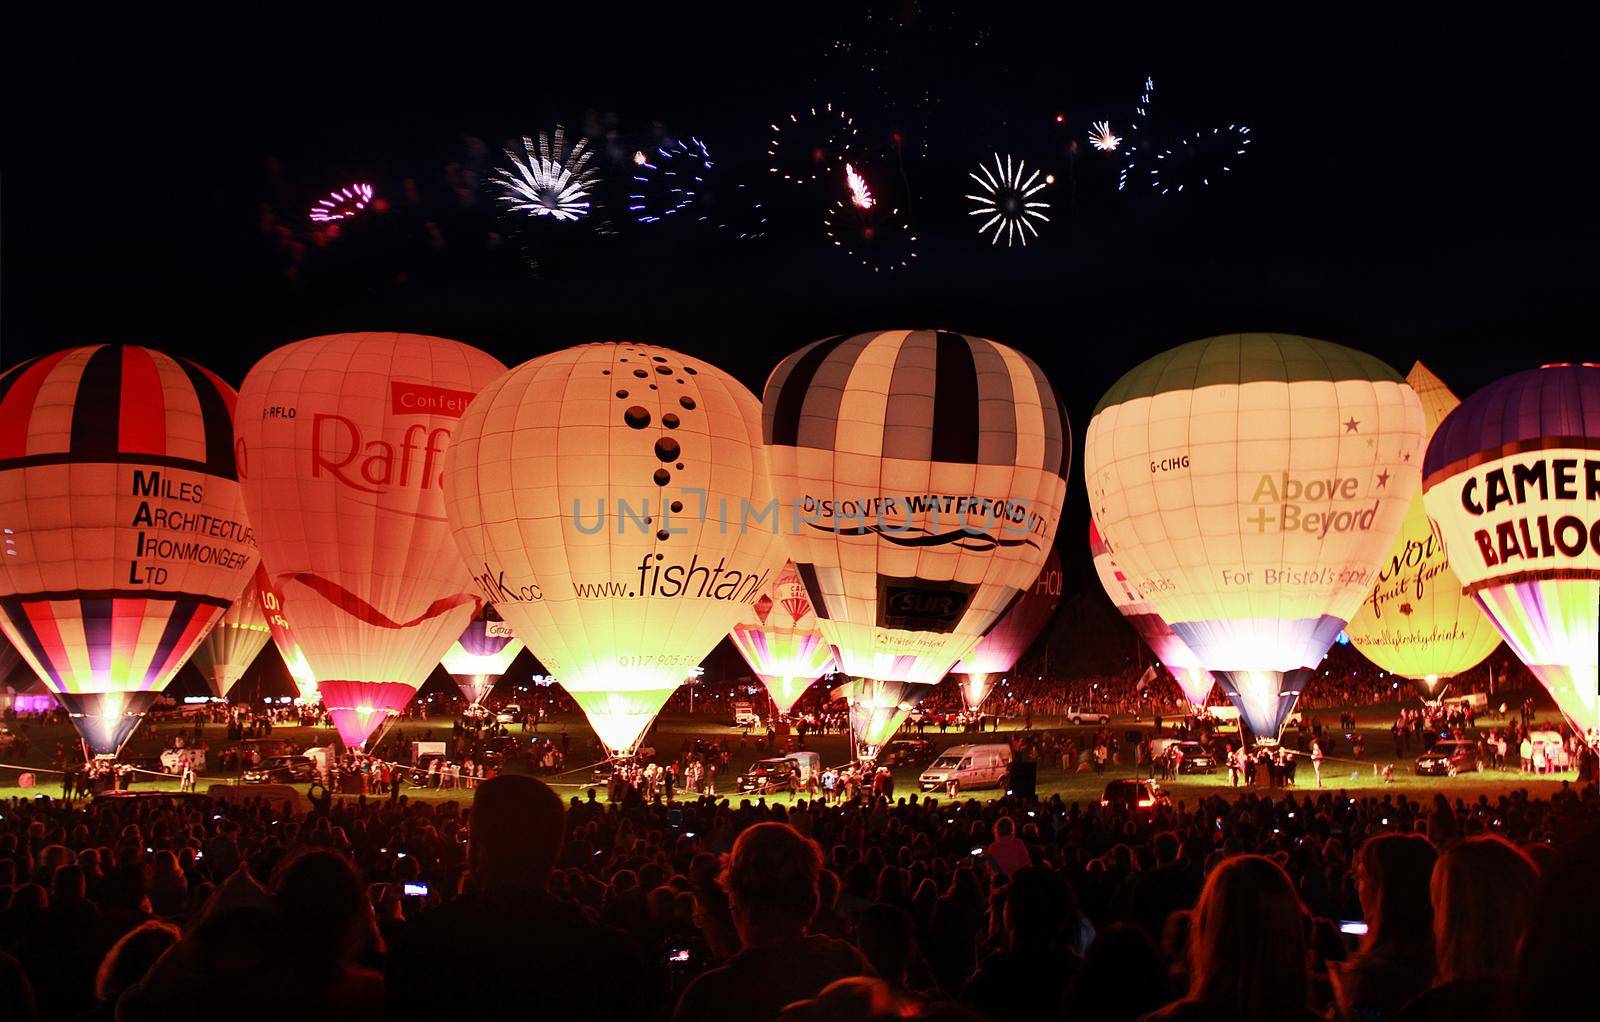 Bristol balloon festival fireworks celebration at night, Bristol, UK. by olifrenchphoto